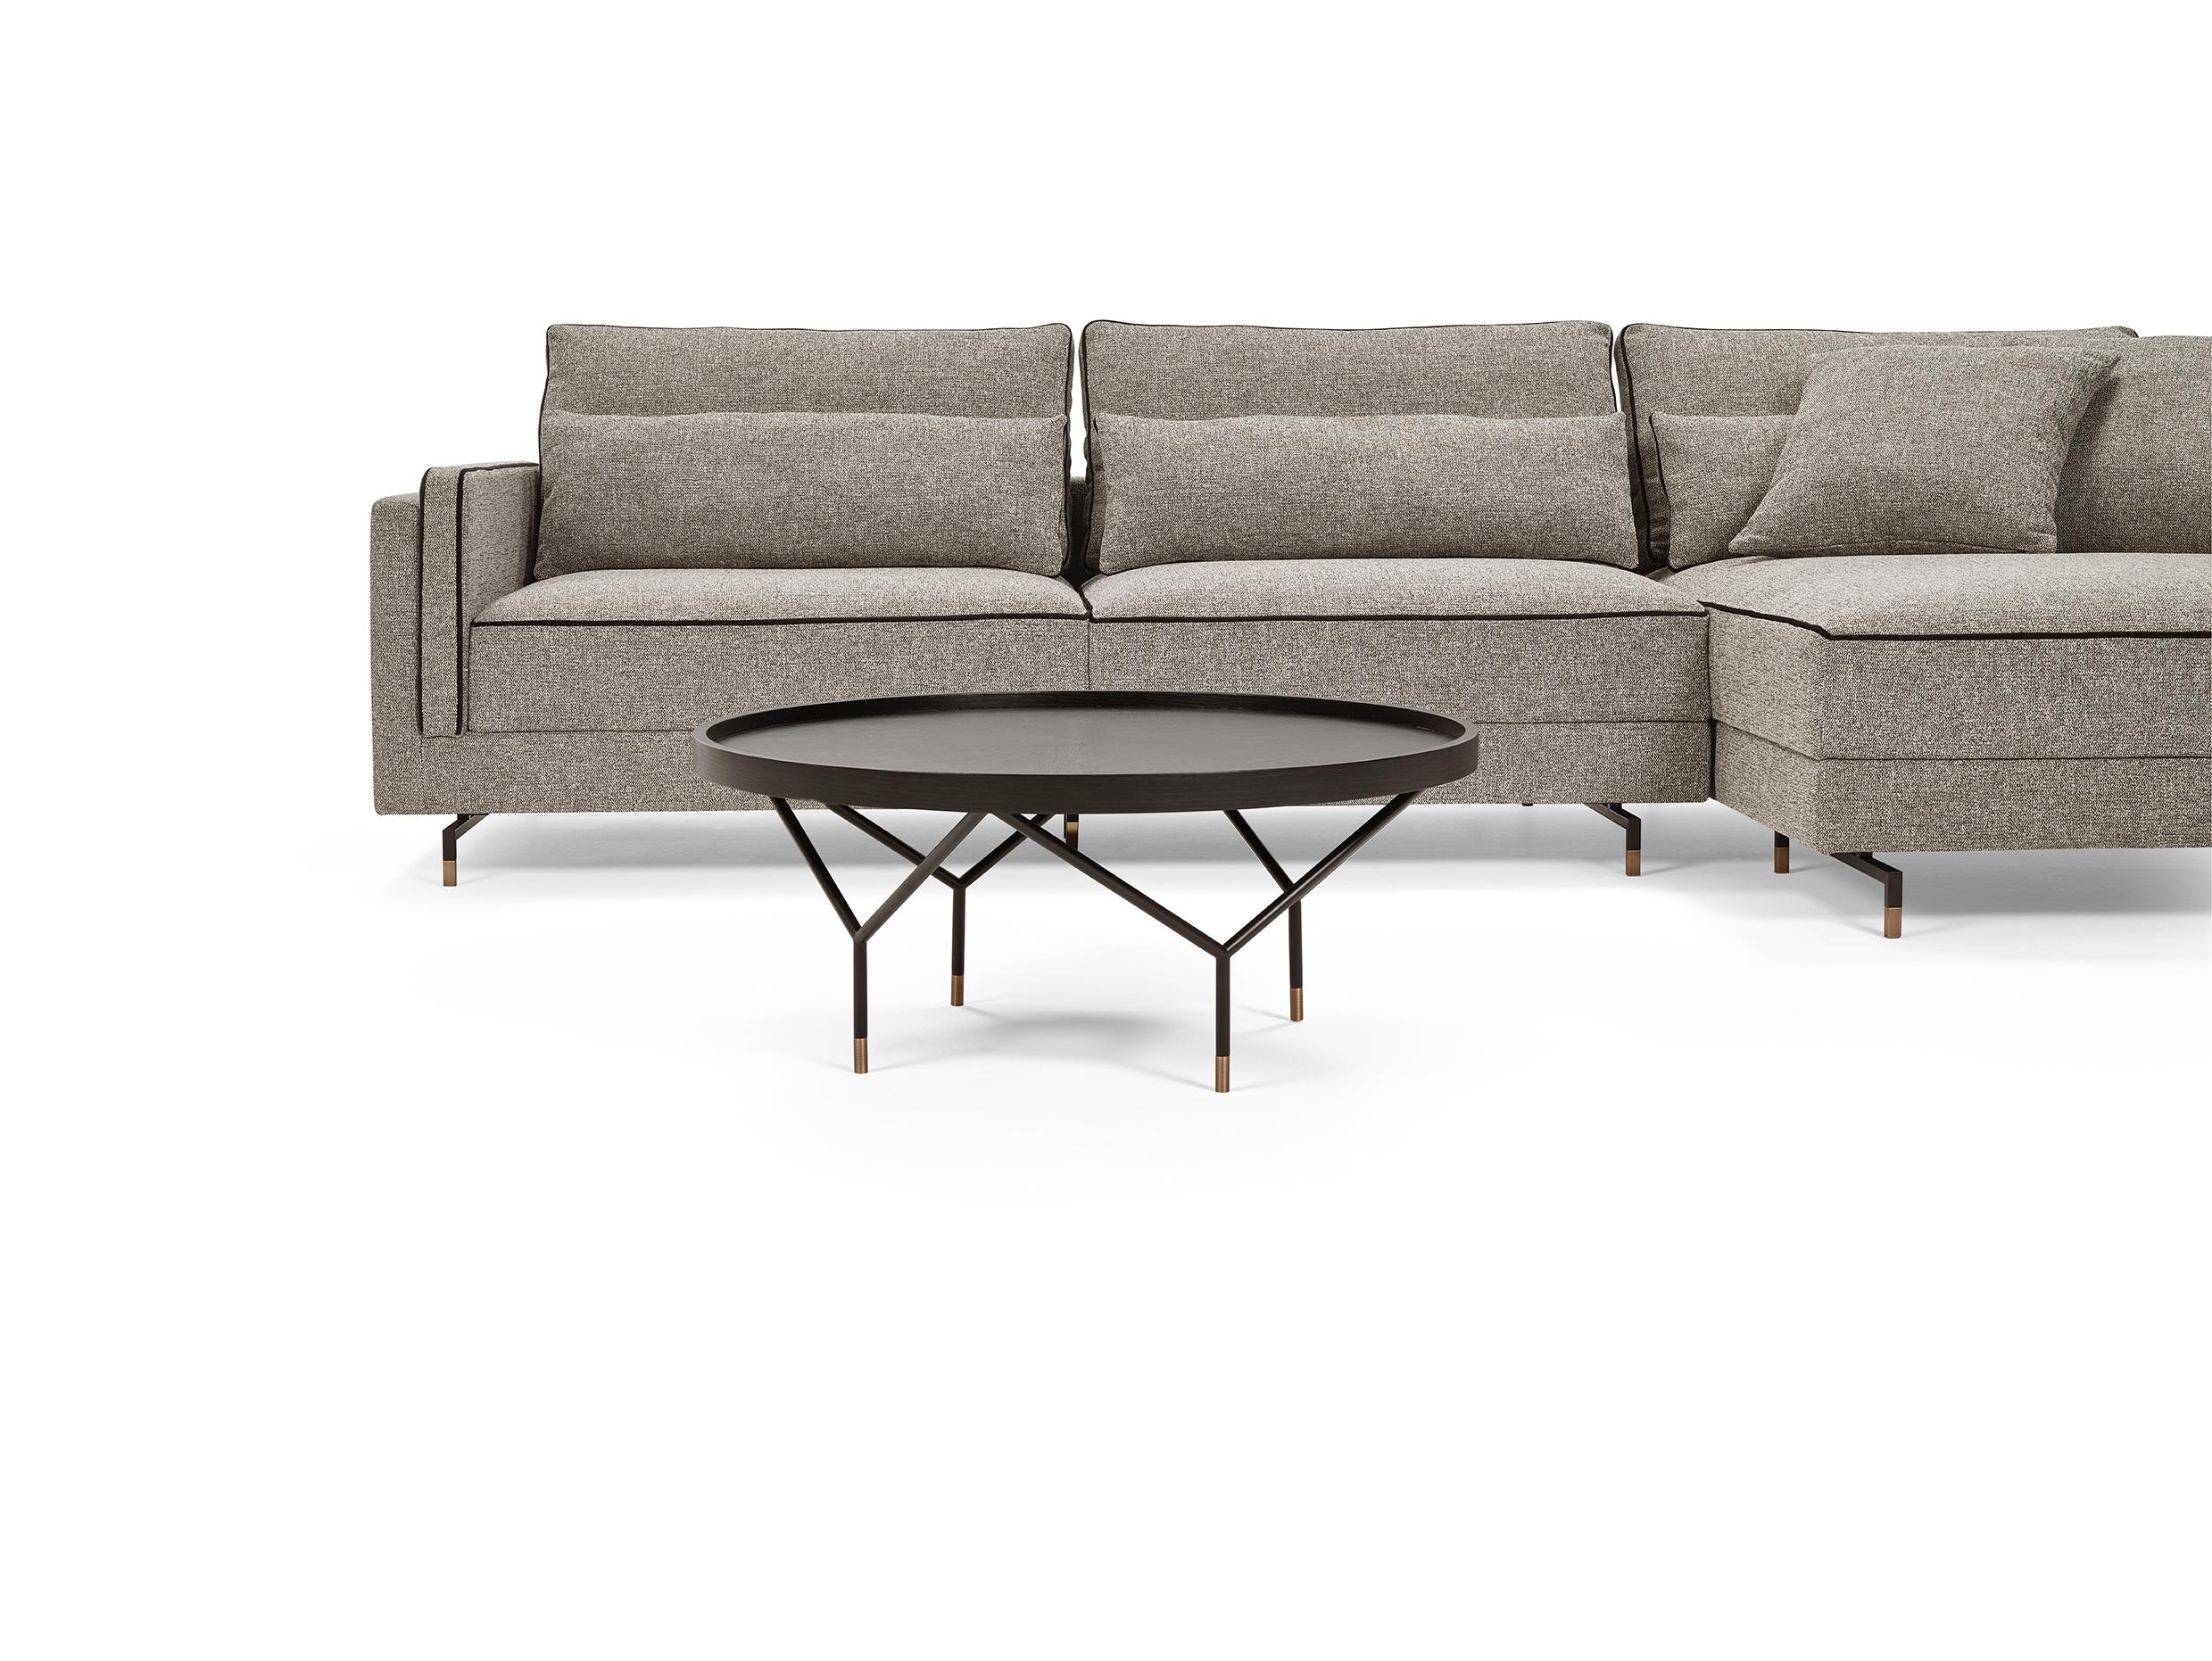 Das modulare Sitzsystem SINATRA ist das Ergebnis einer Suche nach Eleganz, Komfort und Vielseitigkeit in Verbindung miteinander. Das zeitgenössische Design des Sofas Sinatra zeichnet sich durch eine nahtlose Kontrastpaspel aus, die sein Profil